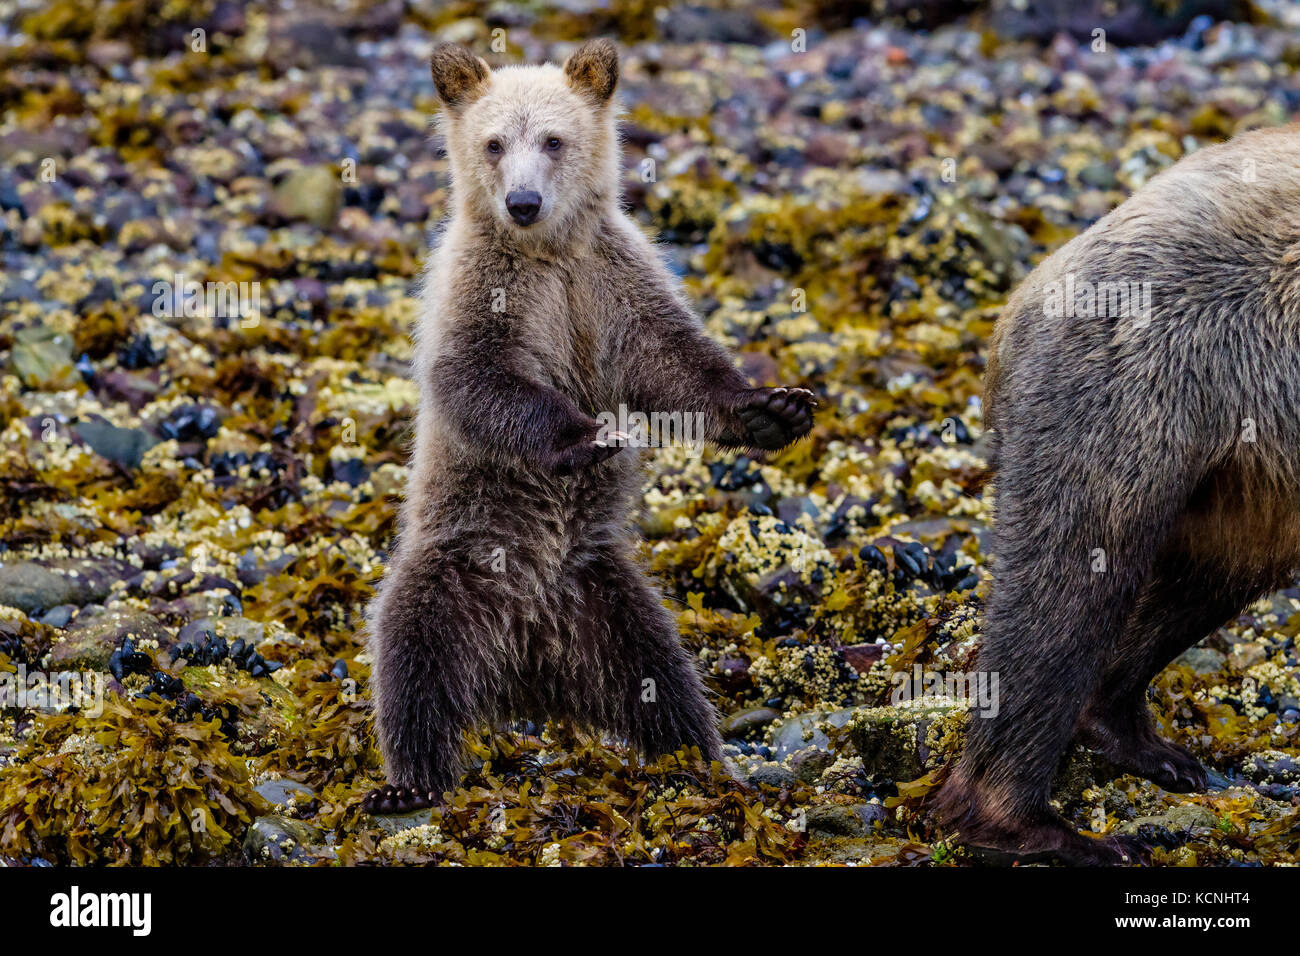 Küsten Grizzly Bear Cub (Ursus arctos) stehend, nahrungssuche an der Küste der schönen Knight Inlet, British Columbia, Kanada. Stockfoto